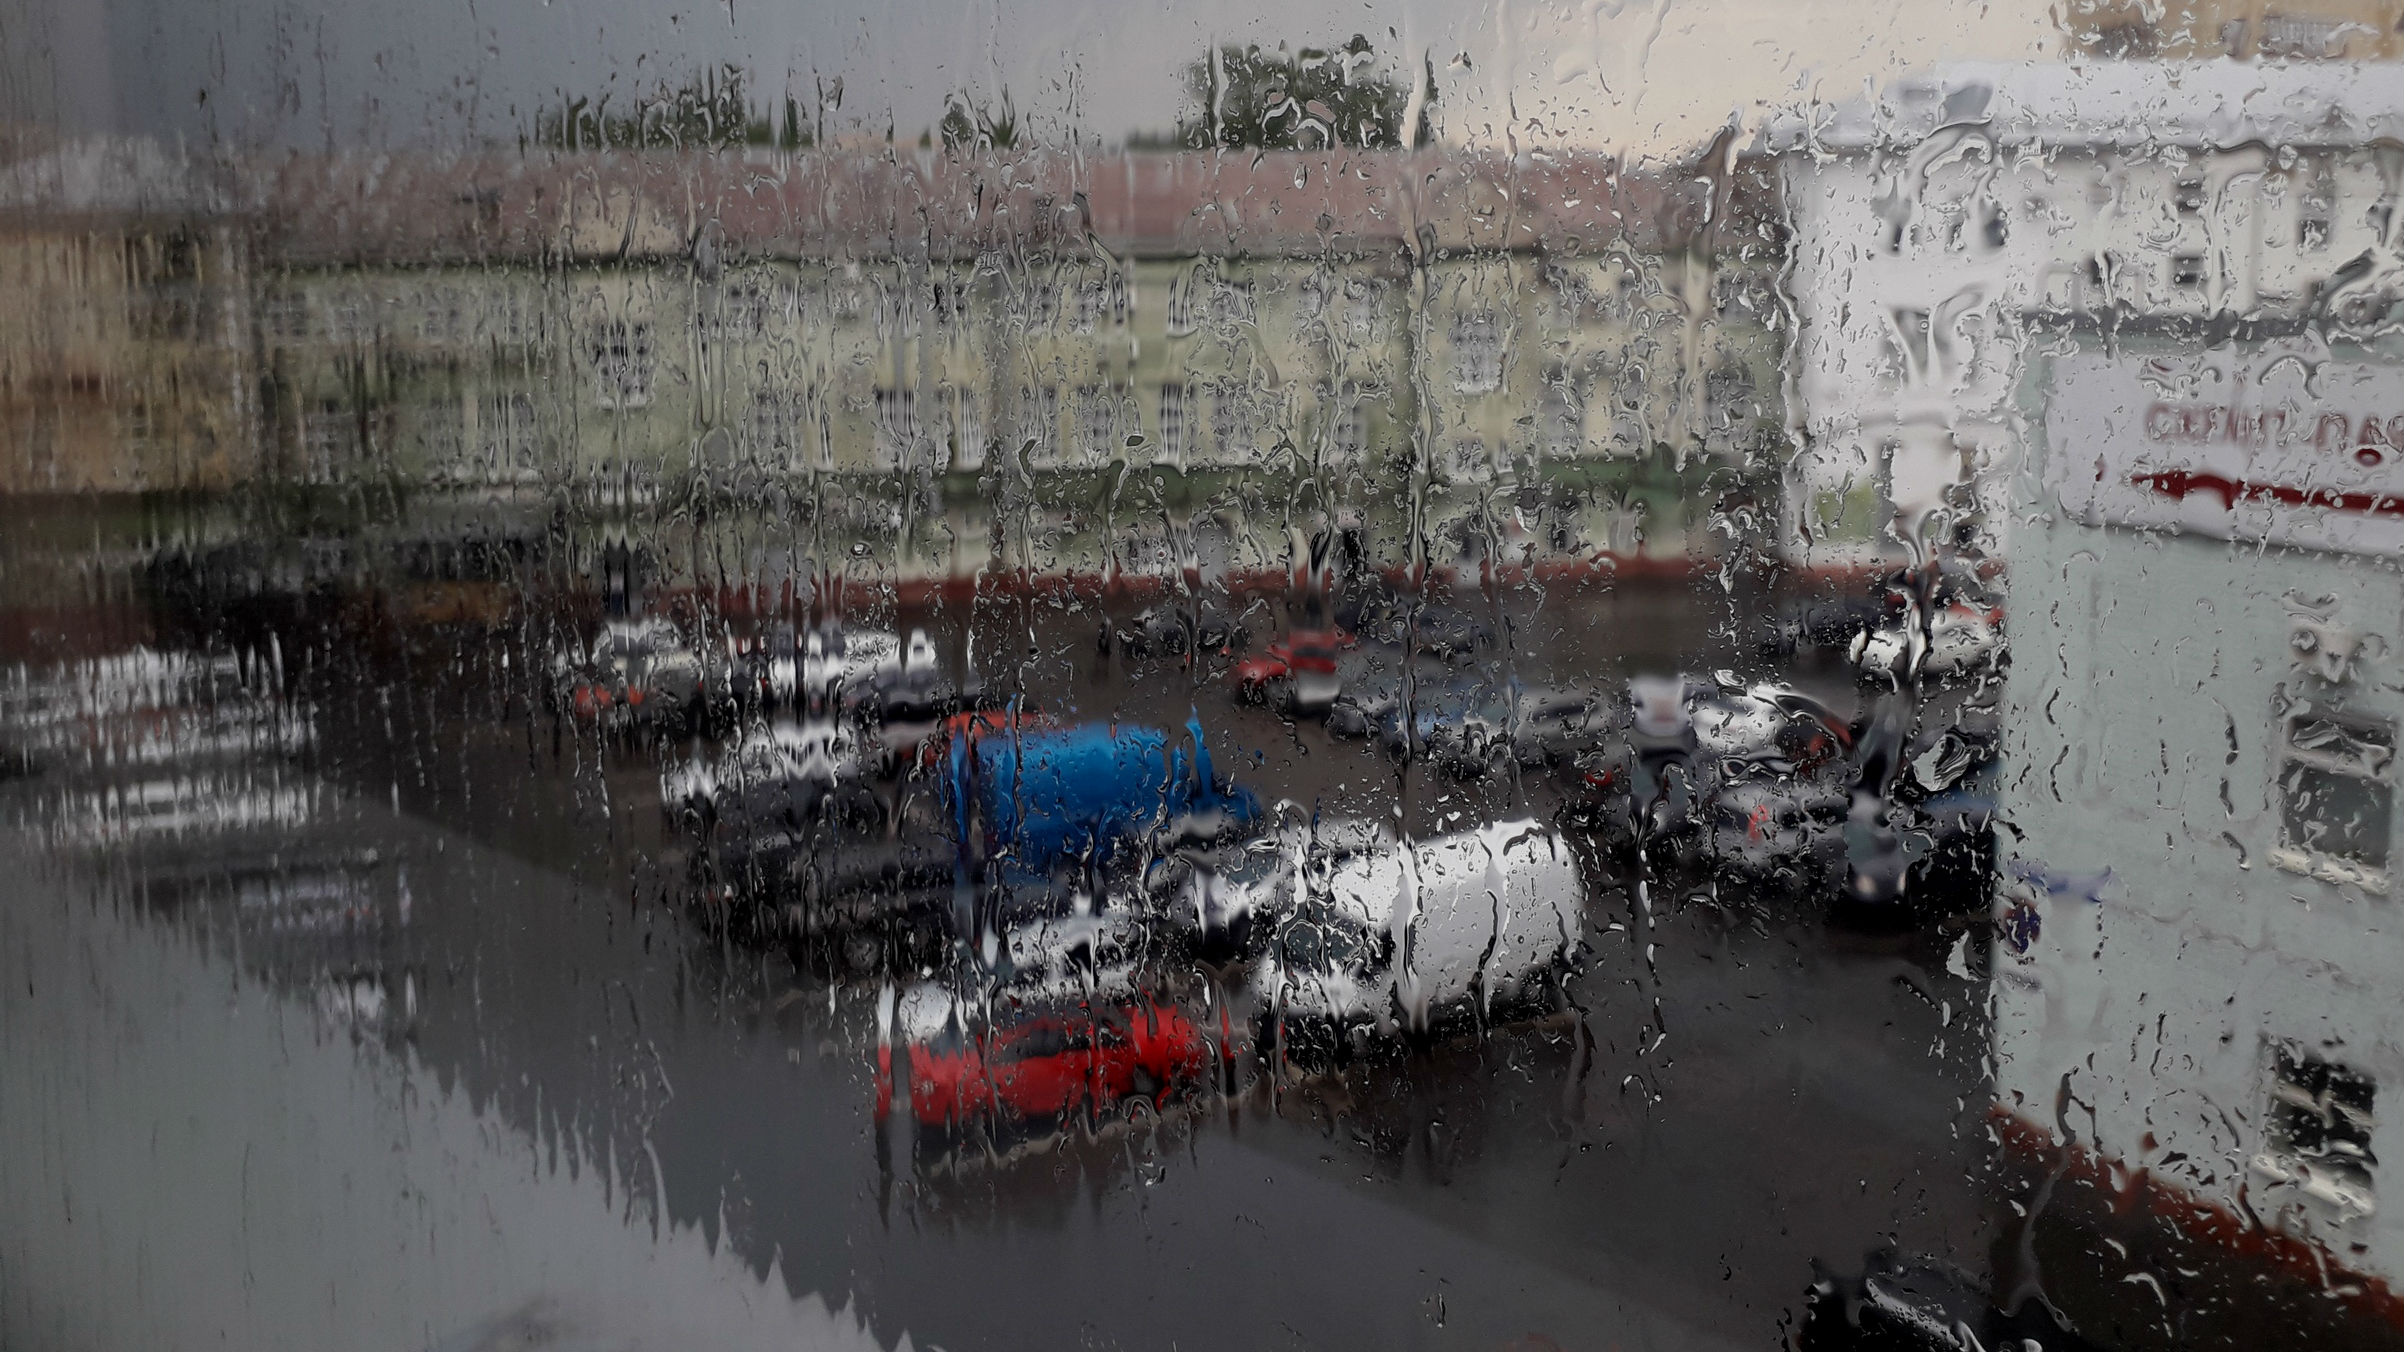 Где закончится дождь. Когда закончится дождь в Иваново сегодня. Ливень в Одинцово сегодня. Когда закончится дождь в Ярославле сегодня. Когда закончится дождь в Пензе сегодня.